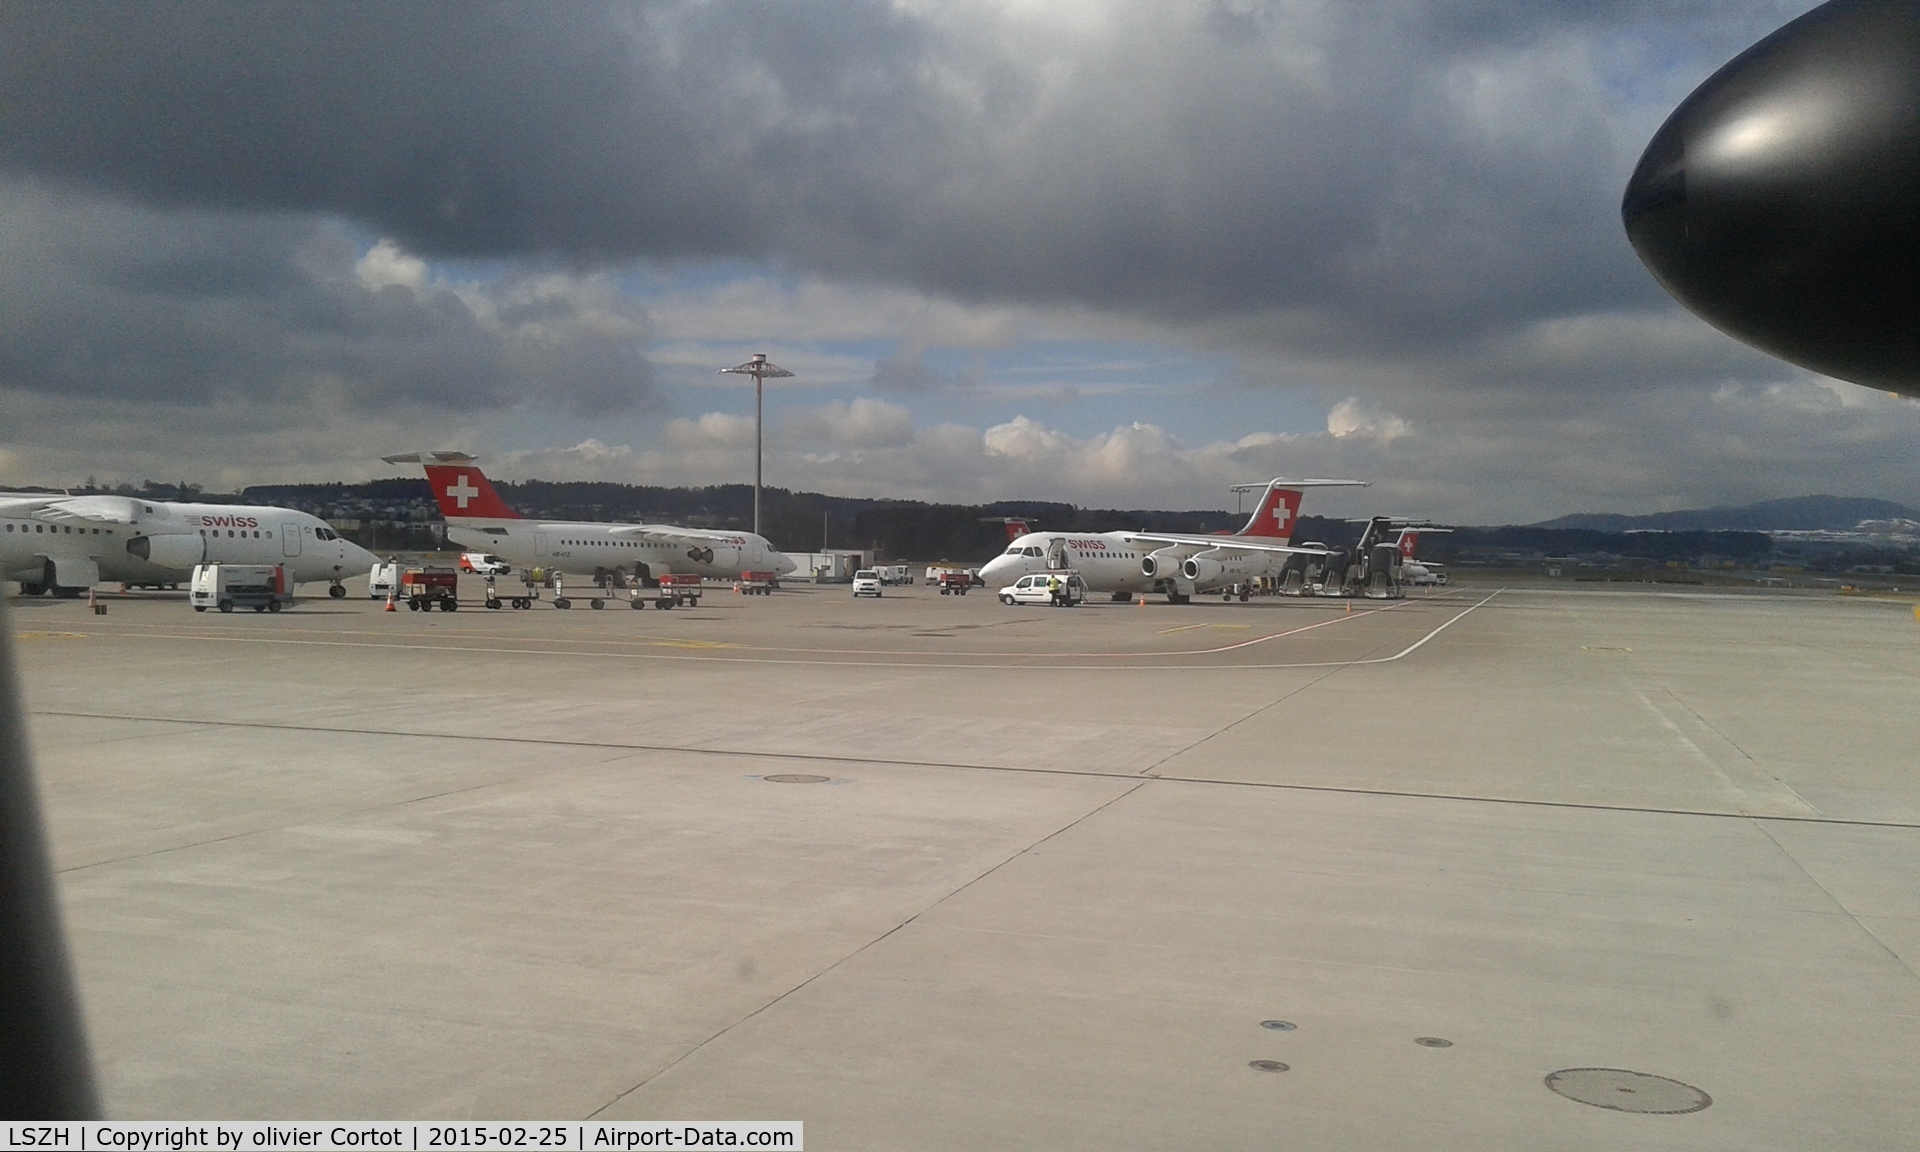 Zurich International Airport, Zurich Switzerland (LSZH) - in 2015